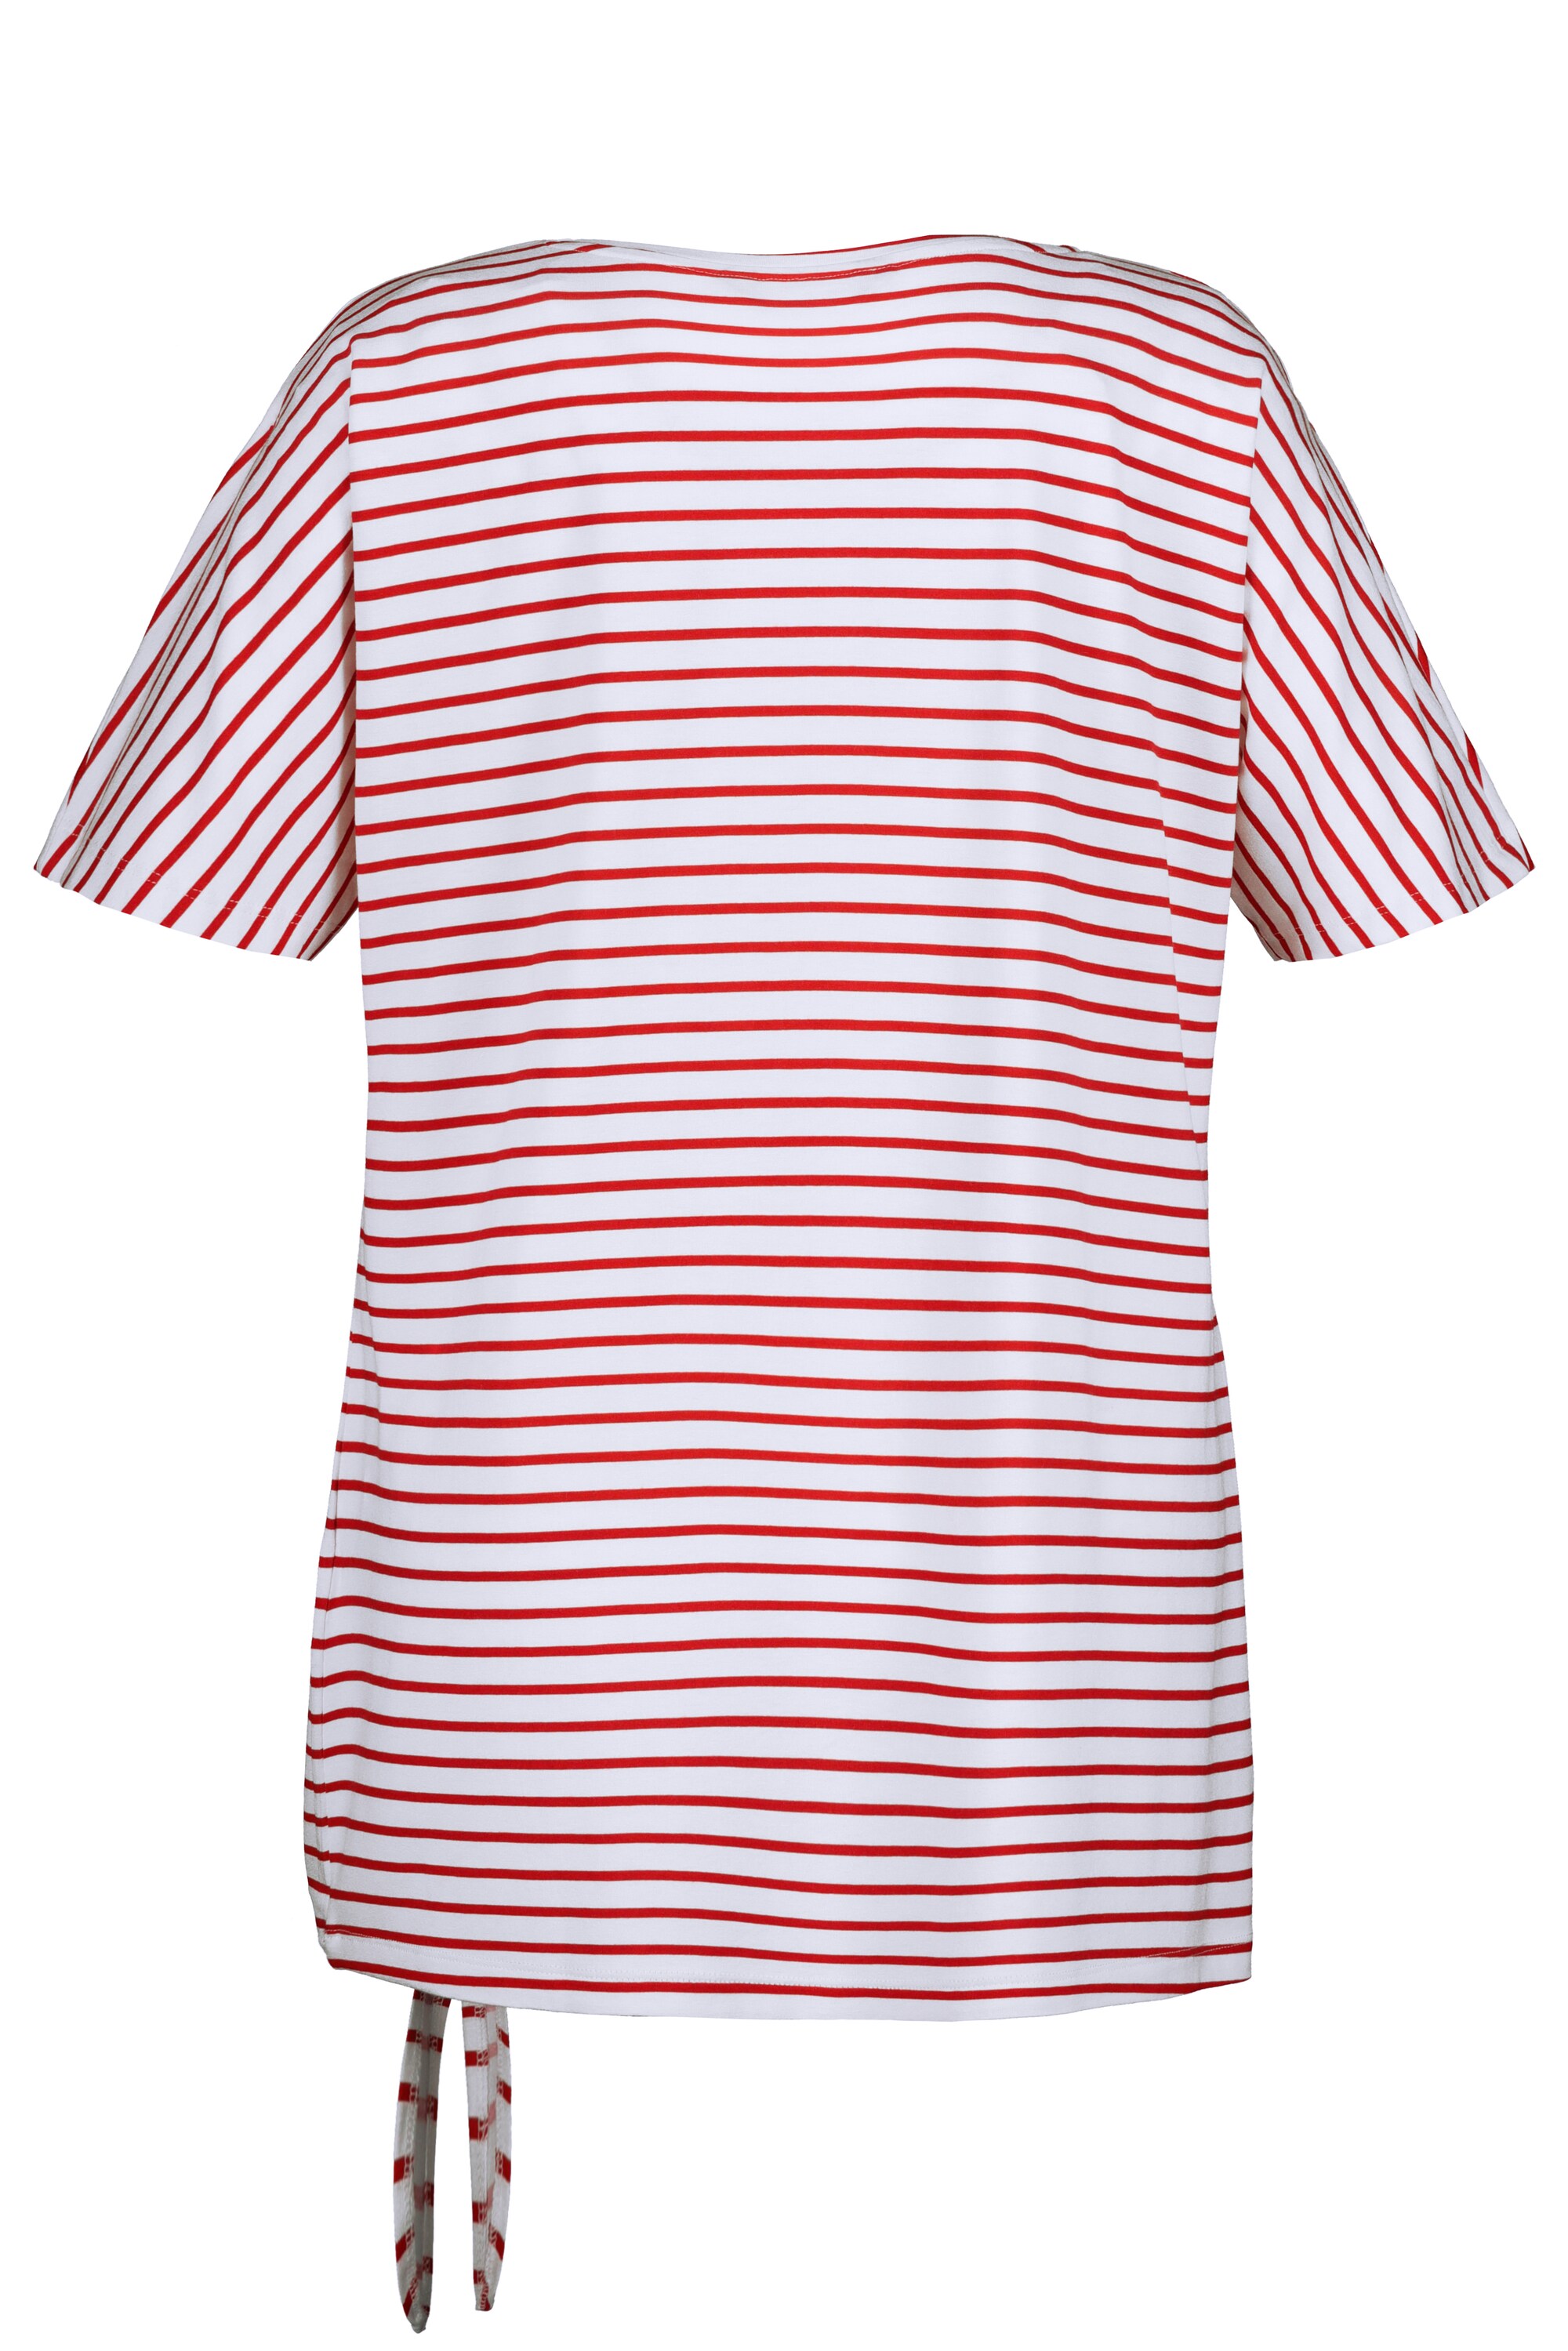 Ulla Popken T-Shirt in Weiß, Rot 